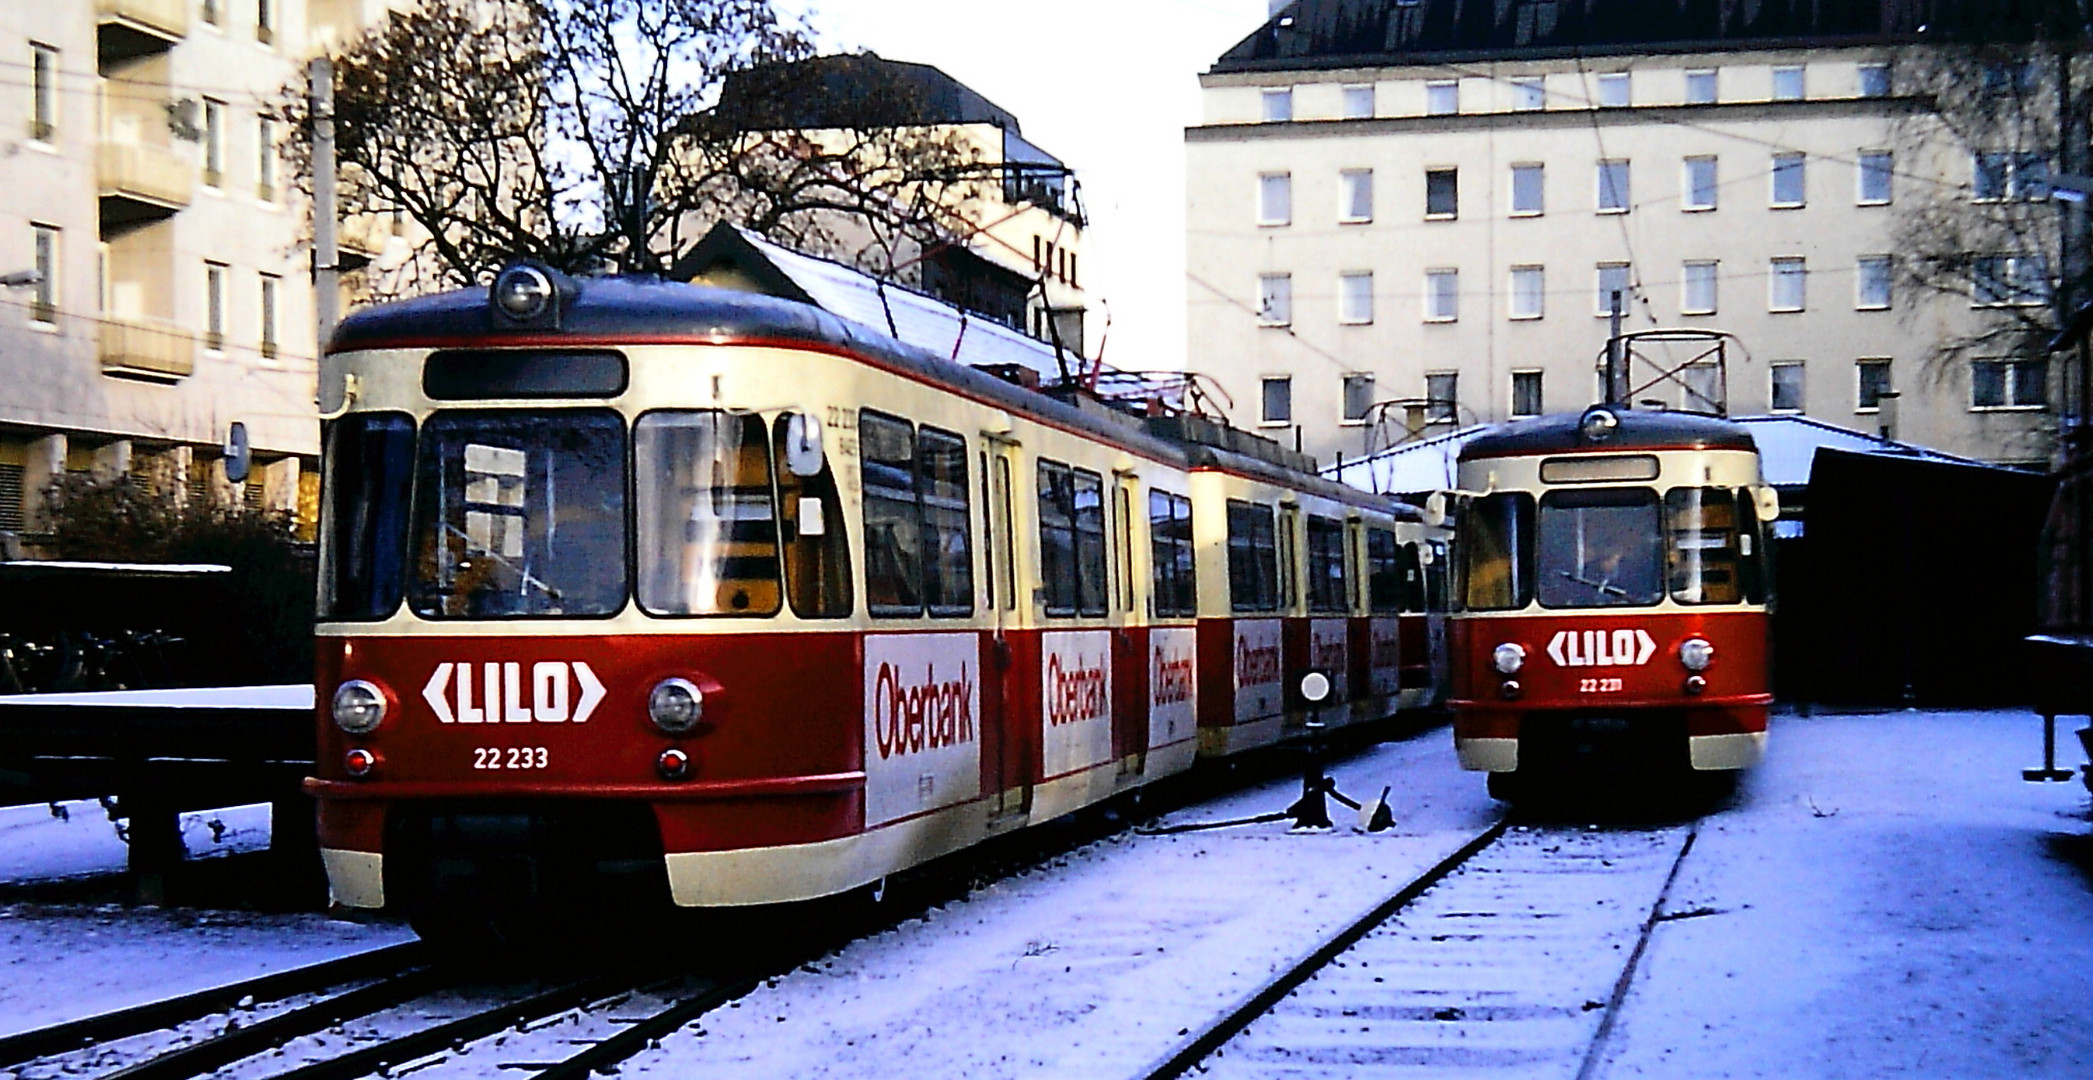 historisch Linz Lokalbahnhof am 1.12.1990 